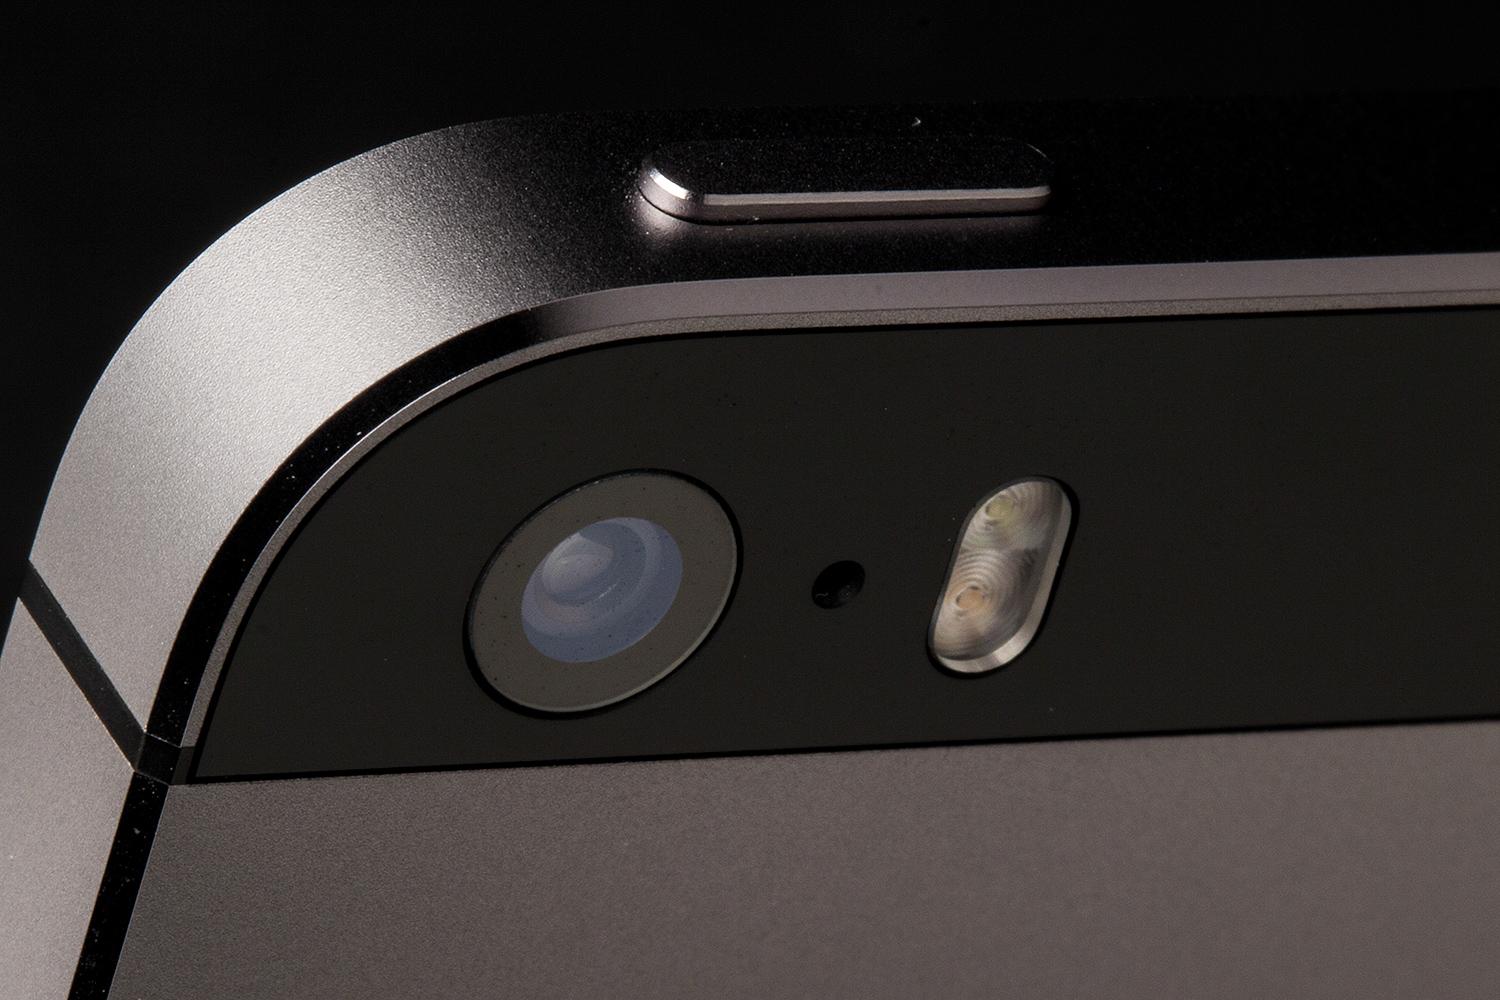 apple-iphone-5s-screen-rear-camera-macro